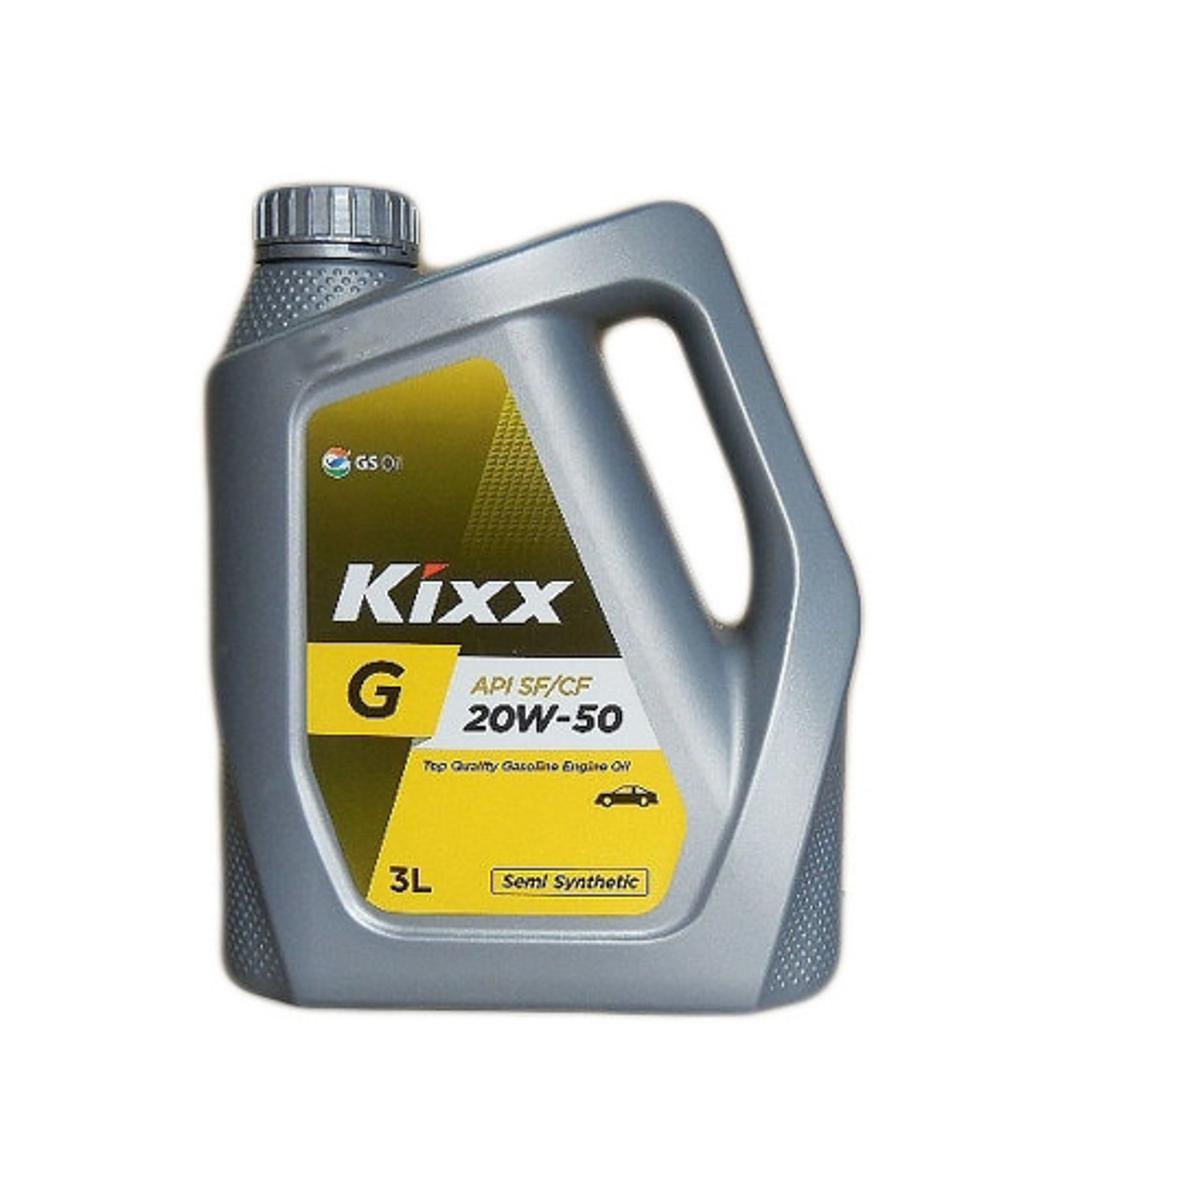 Kixx G 20W-50 API SF Engine Oil